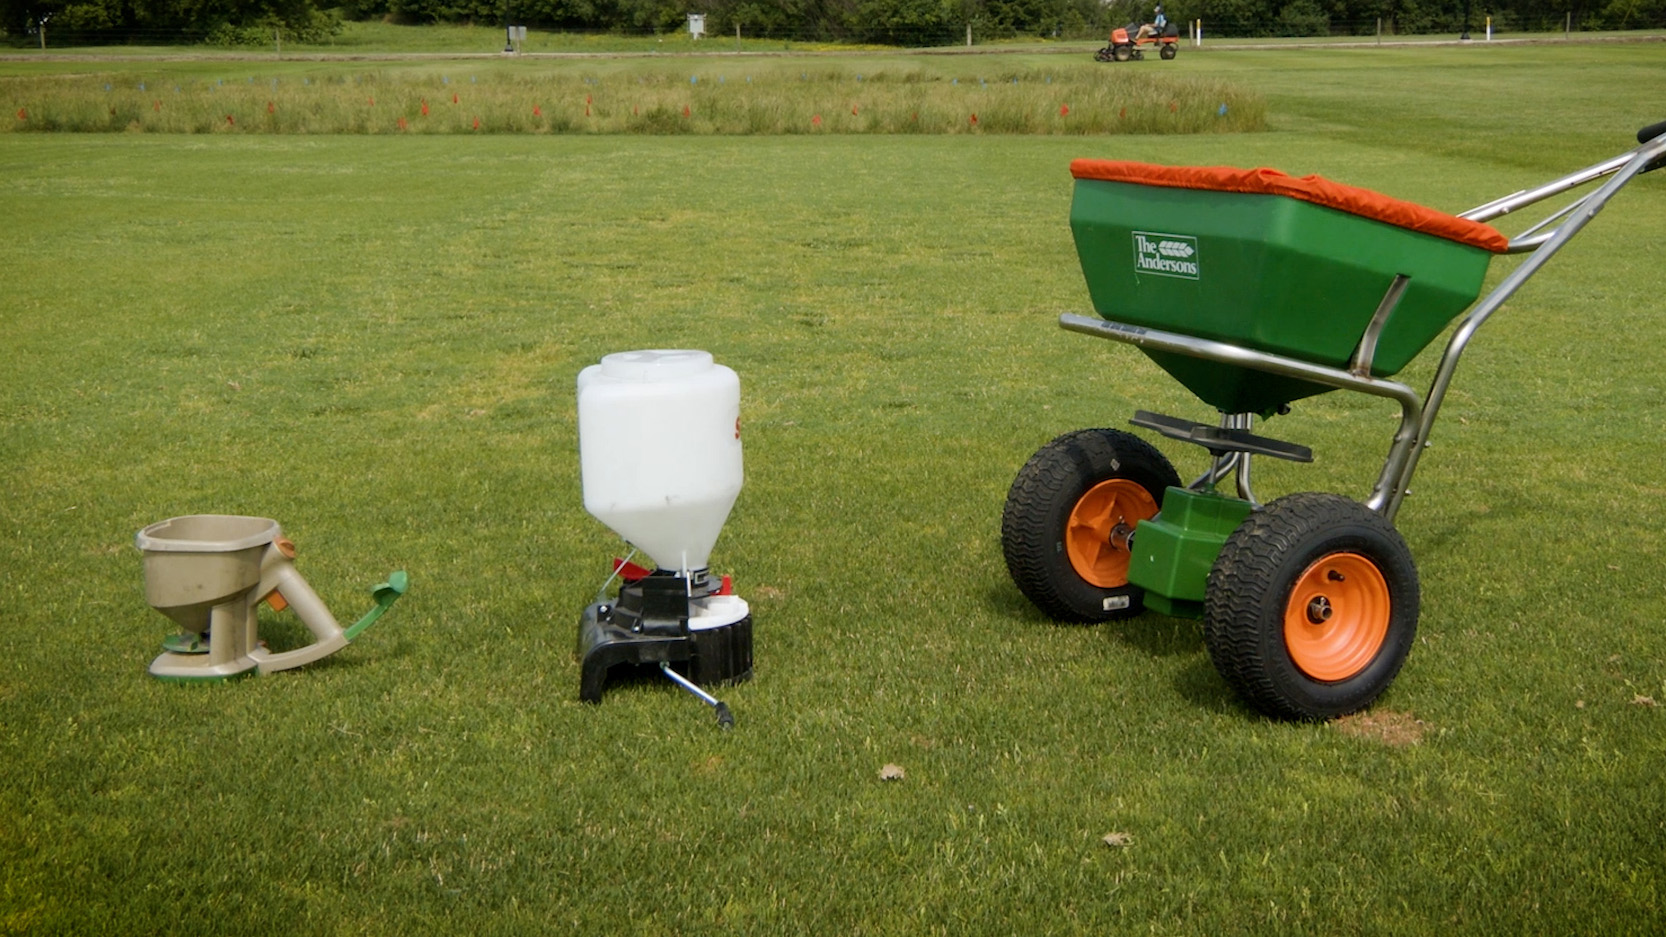 Lawn fertilizing equipment on a green lawn.